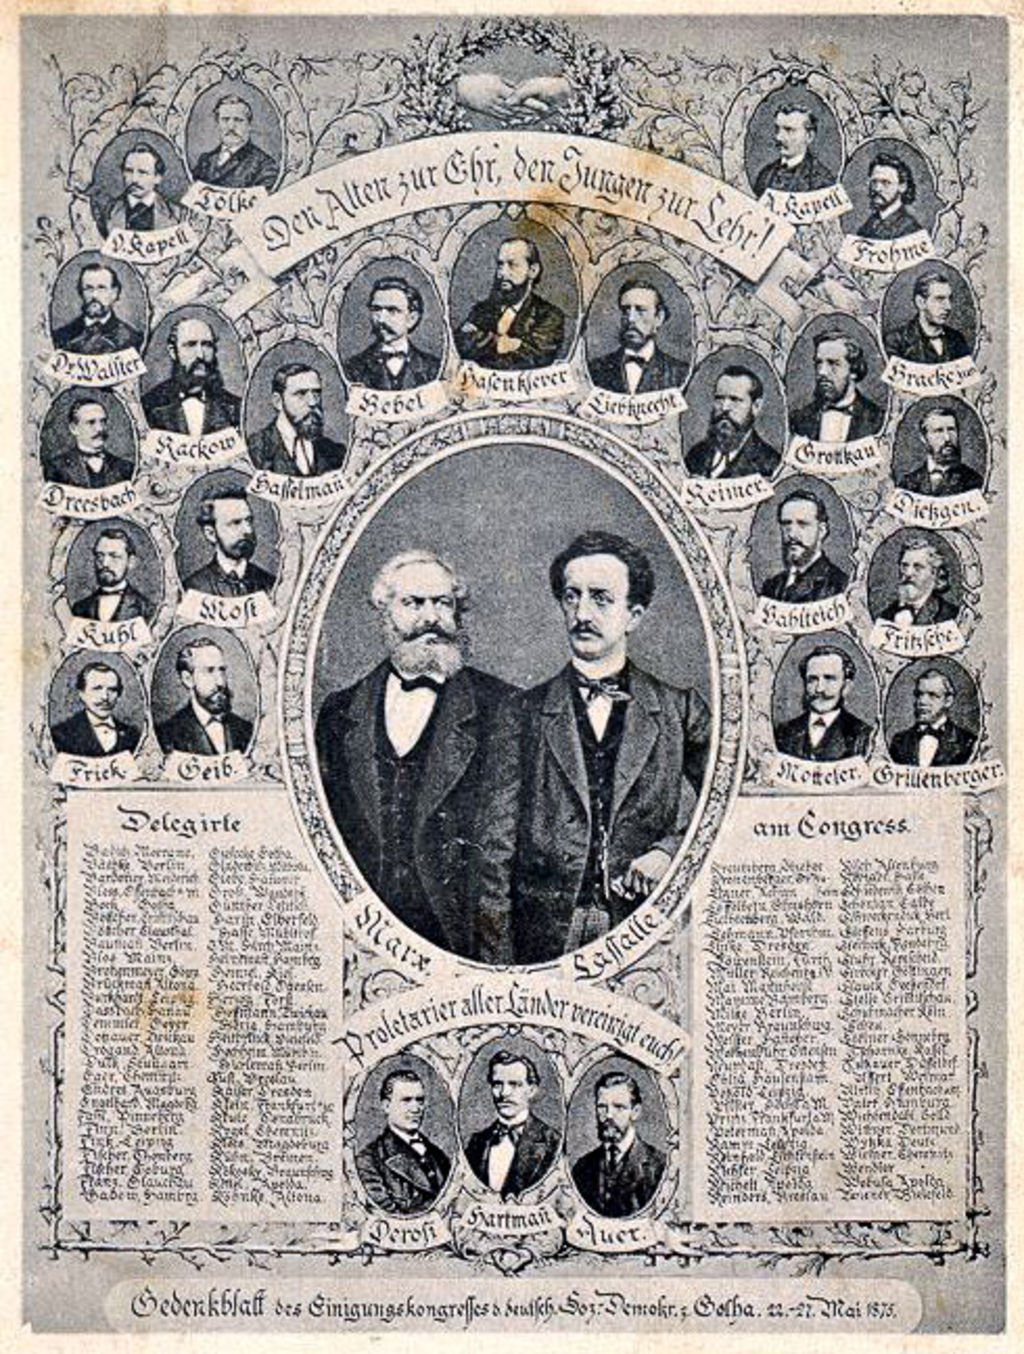 Exponat: Postkarte: Zur Erinnerung an den Gothaer Kongress, 1875